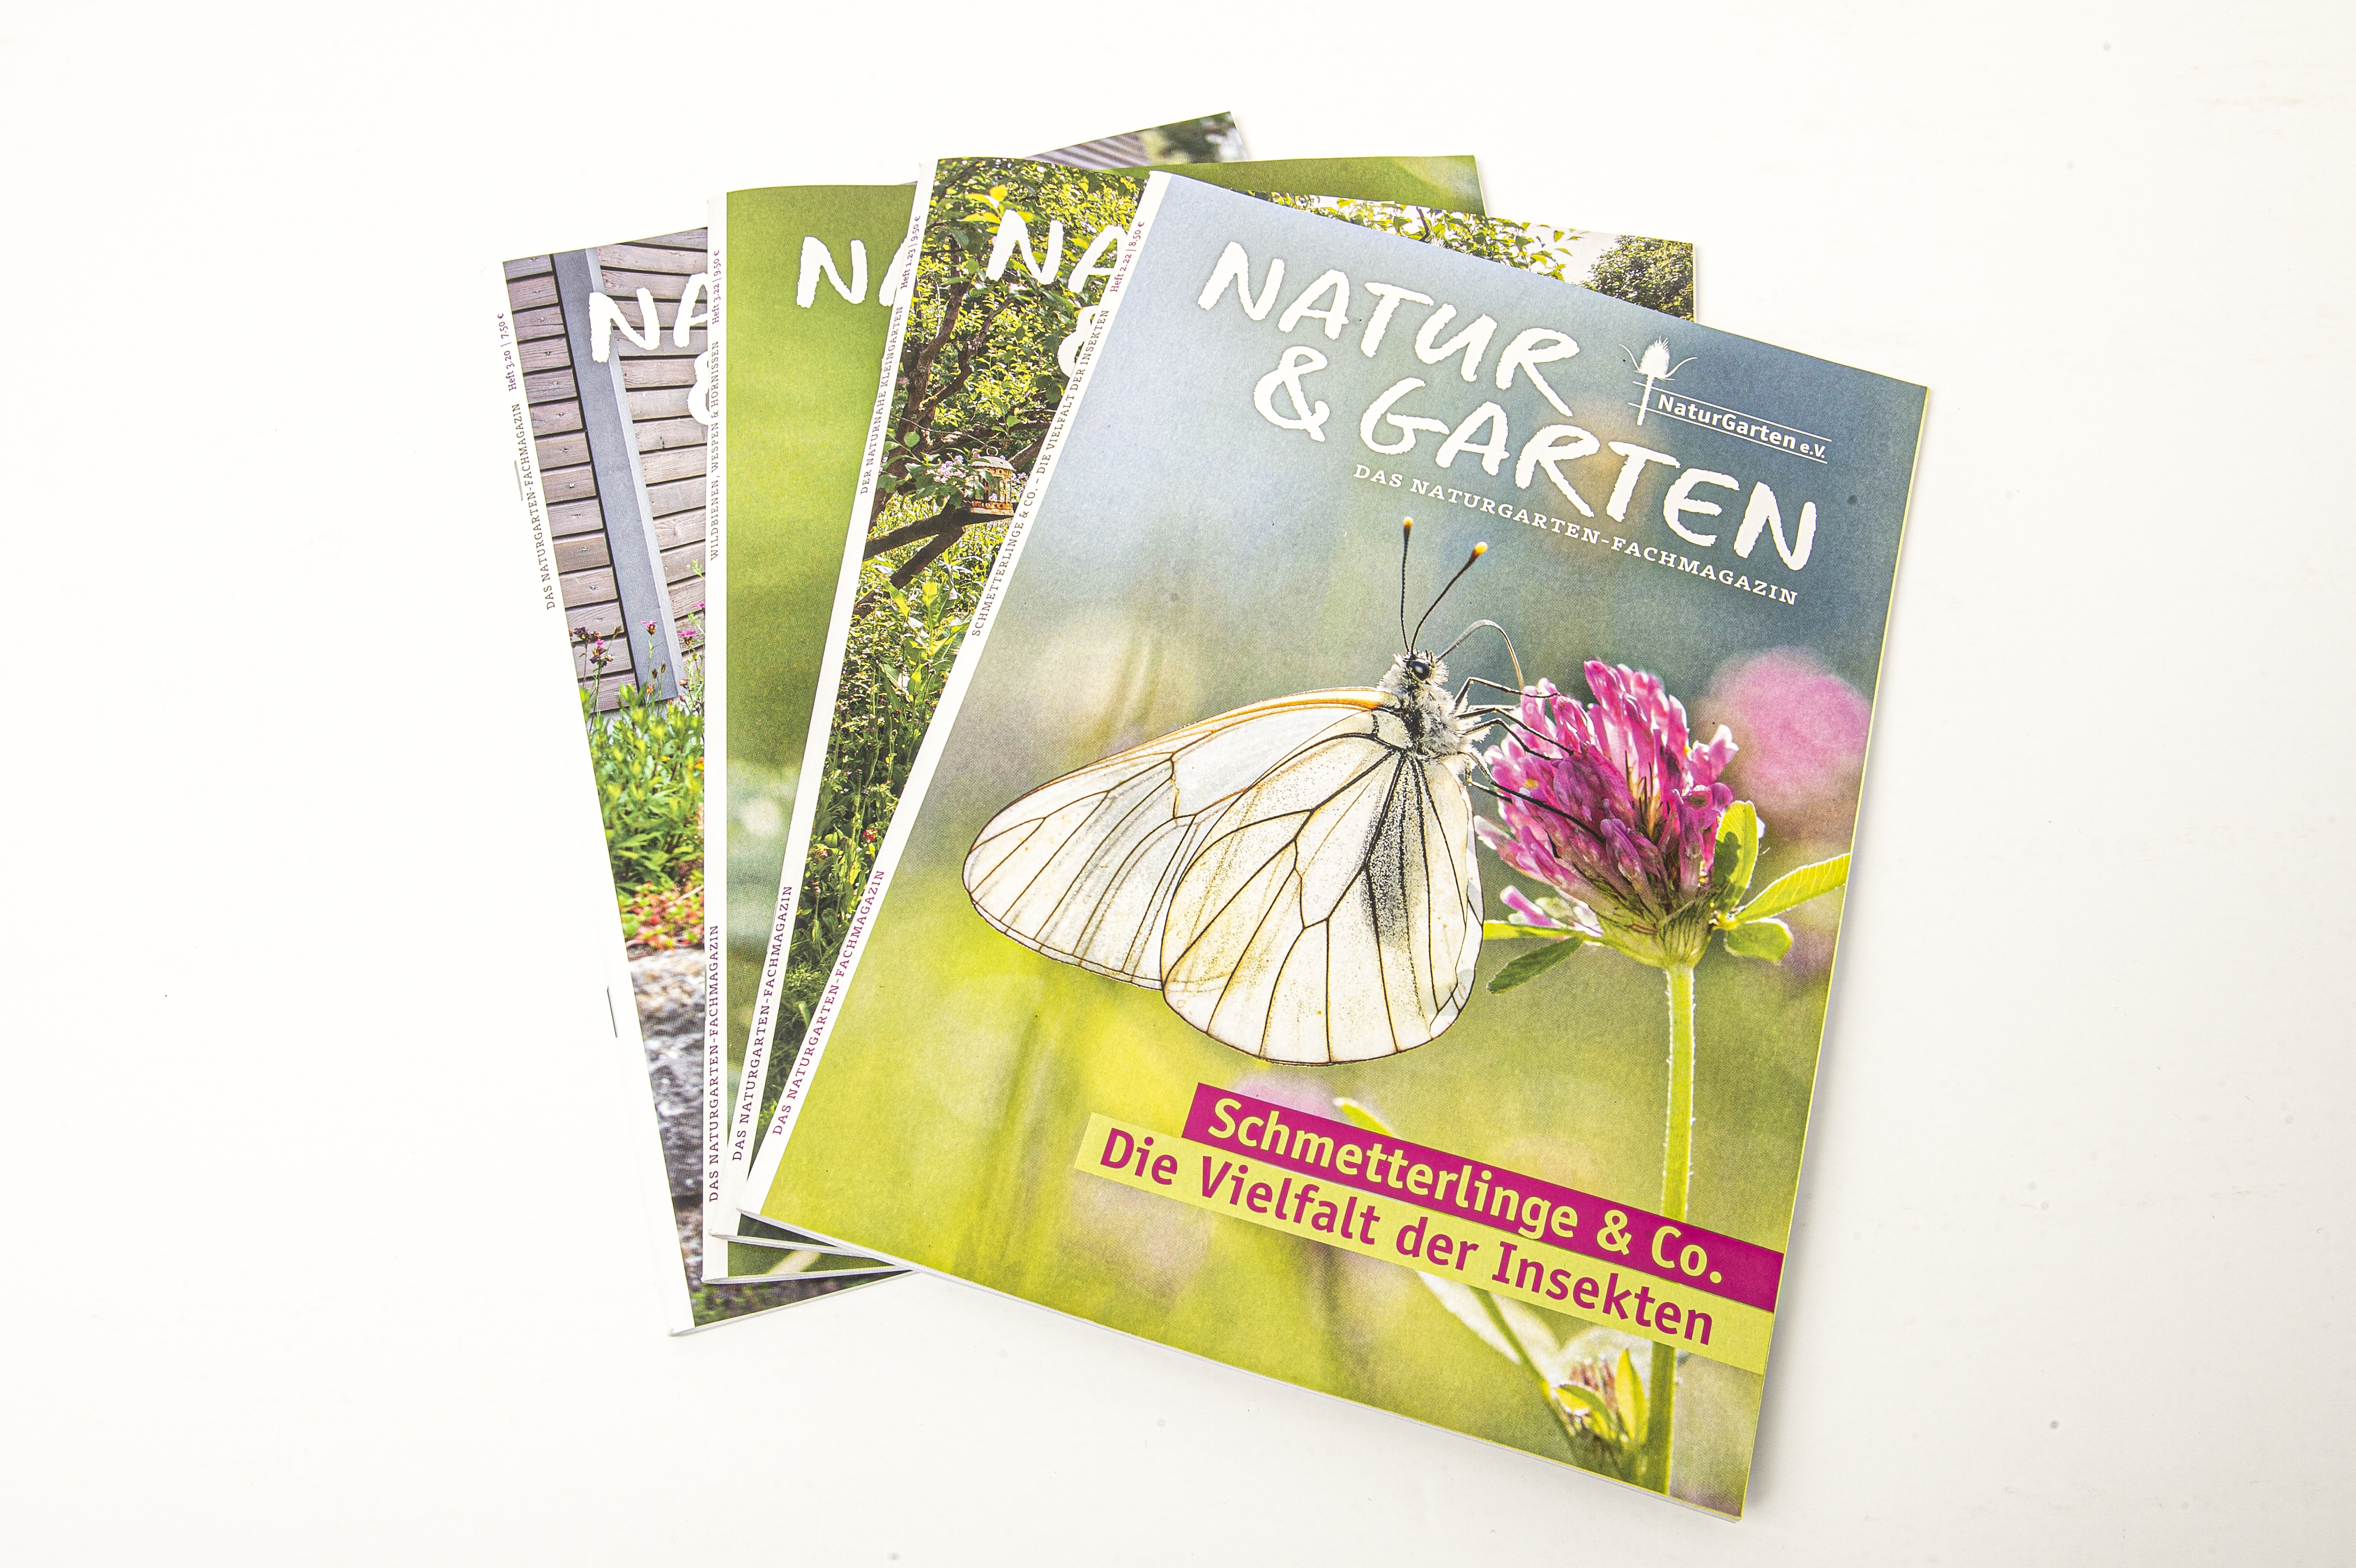 einige Hefte "Natur & Garten" liegen übereinander. Auf dem Cover des oberen Magazins ist ein Foto von einem Schmetterling, der auf einer Blüte sitzt. Darunter steht das Titelthema: "Schmetterlinge & Co. Die Vielfalt der Insekten"